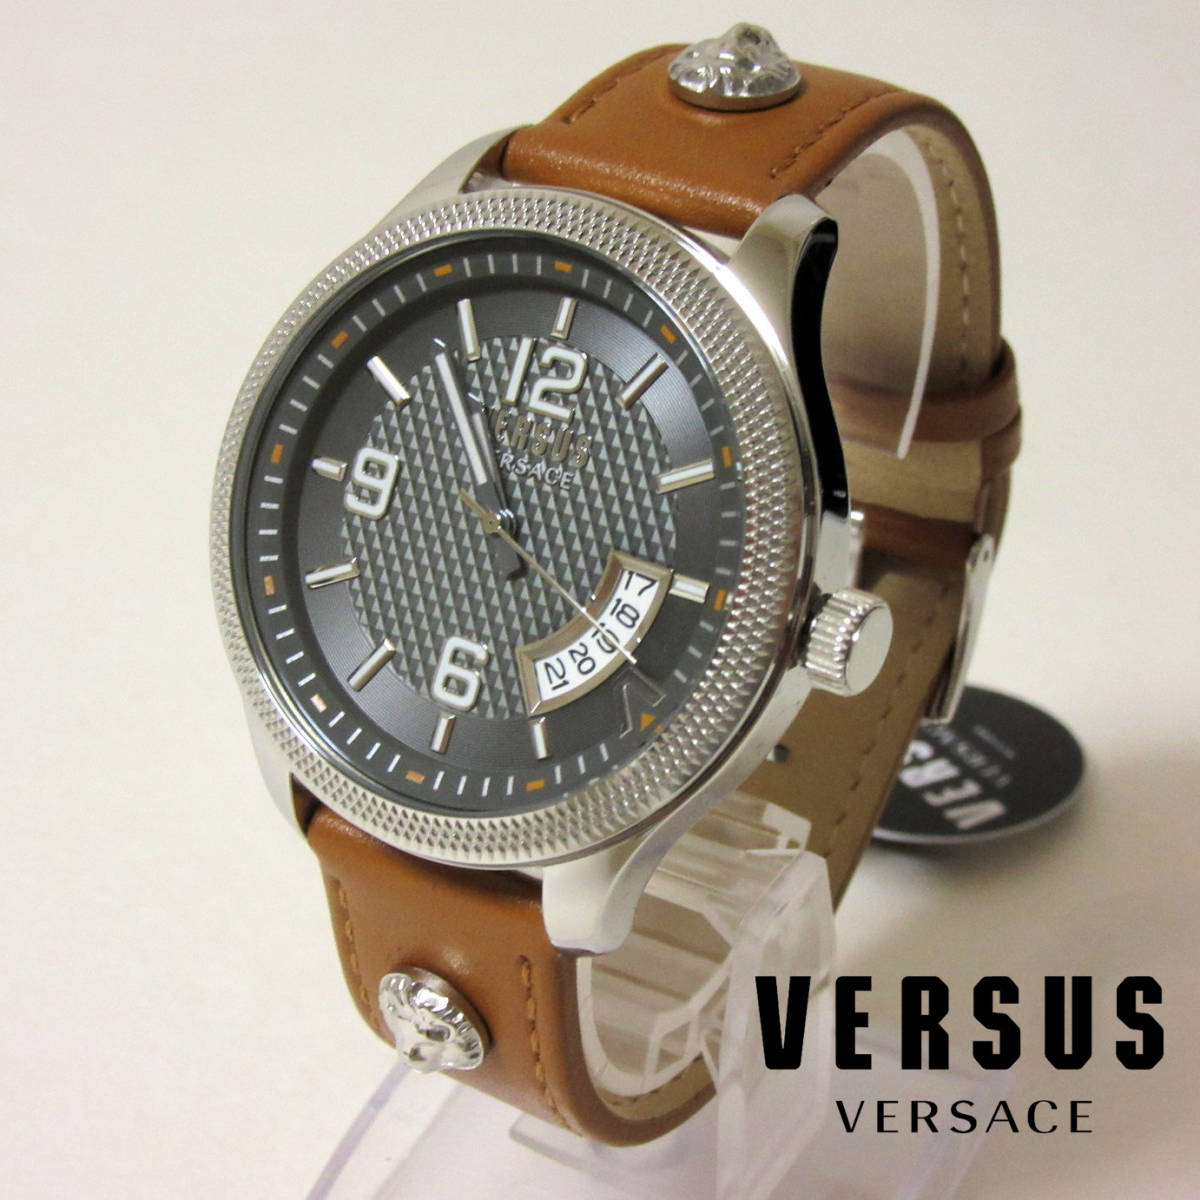 Новые в коробке VERSUS VERSACE Мужские часы с 3 стрелками и датой и гильошировкой, кожаный ремень ручной работы, коричневые, 44 мм, брендовые часы, линия, Версаче